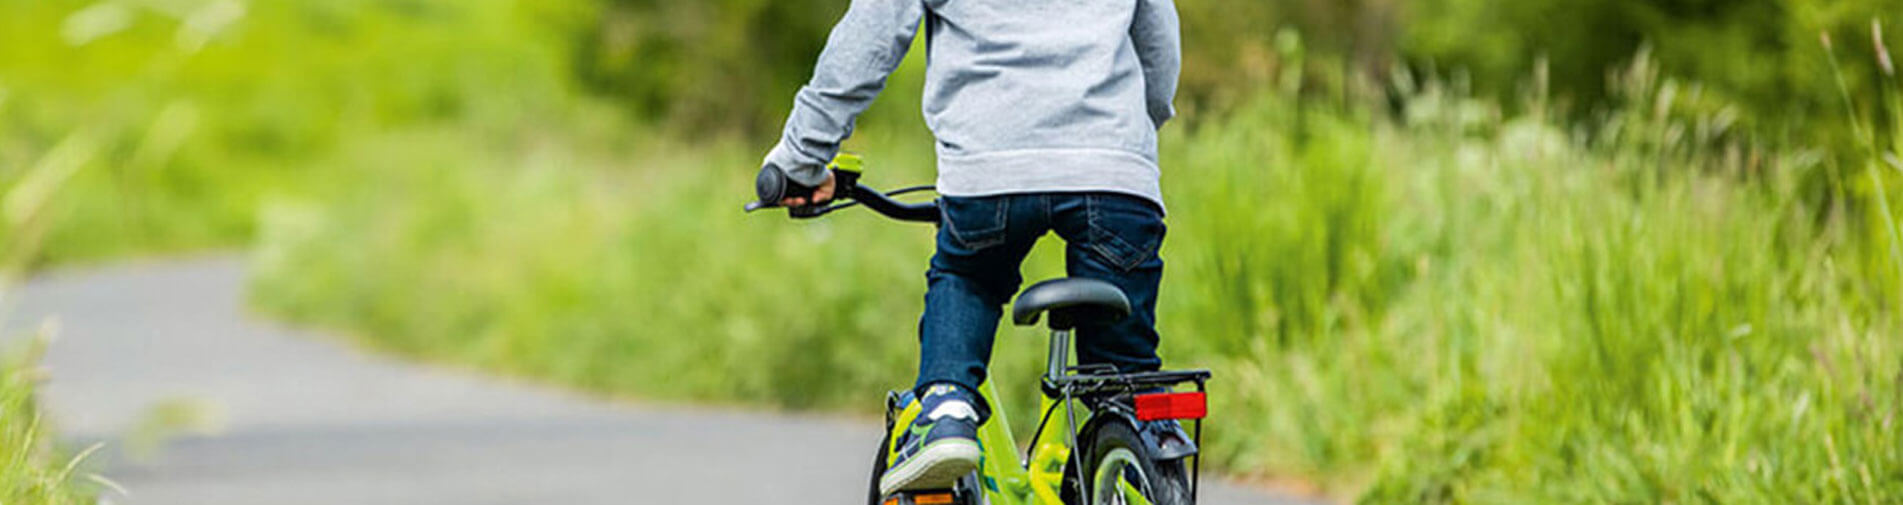 20 Zoll Fahrrad Kinderfahrrad mit Reflektoren Schutzblech Alter ab